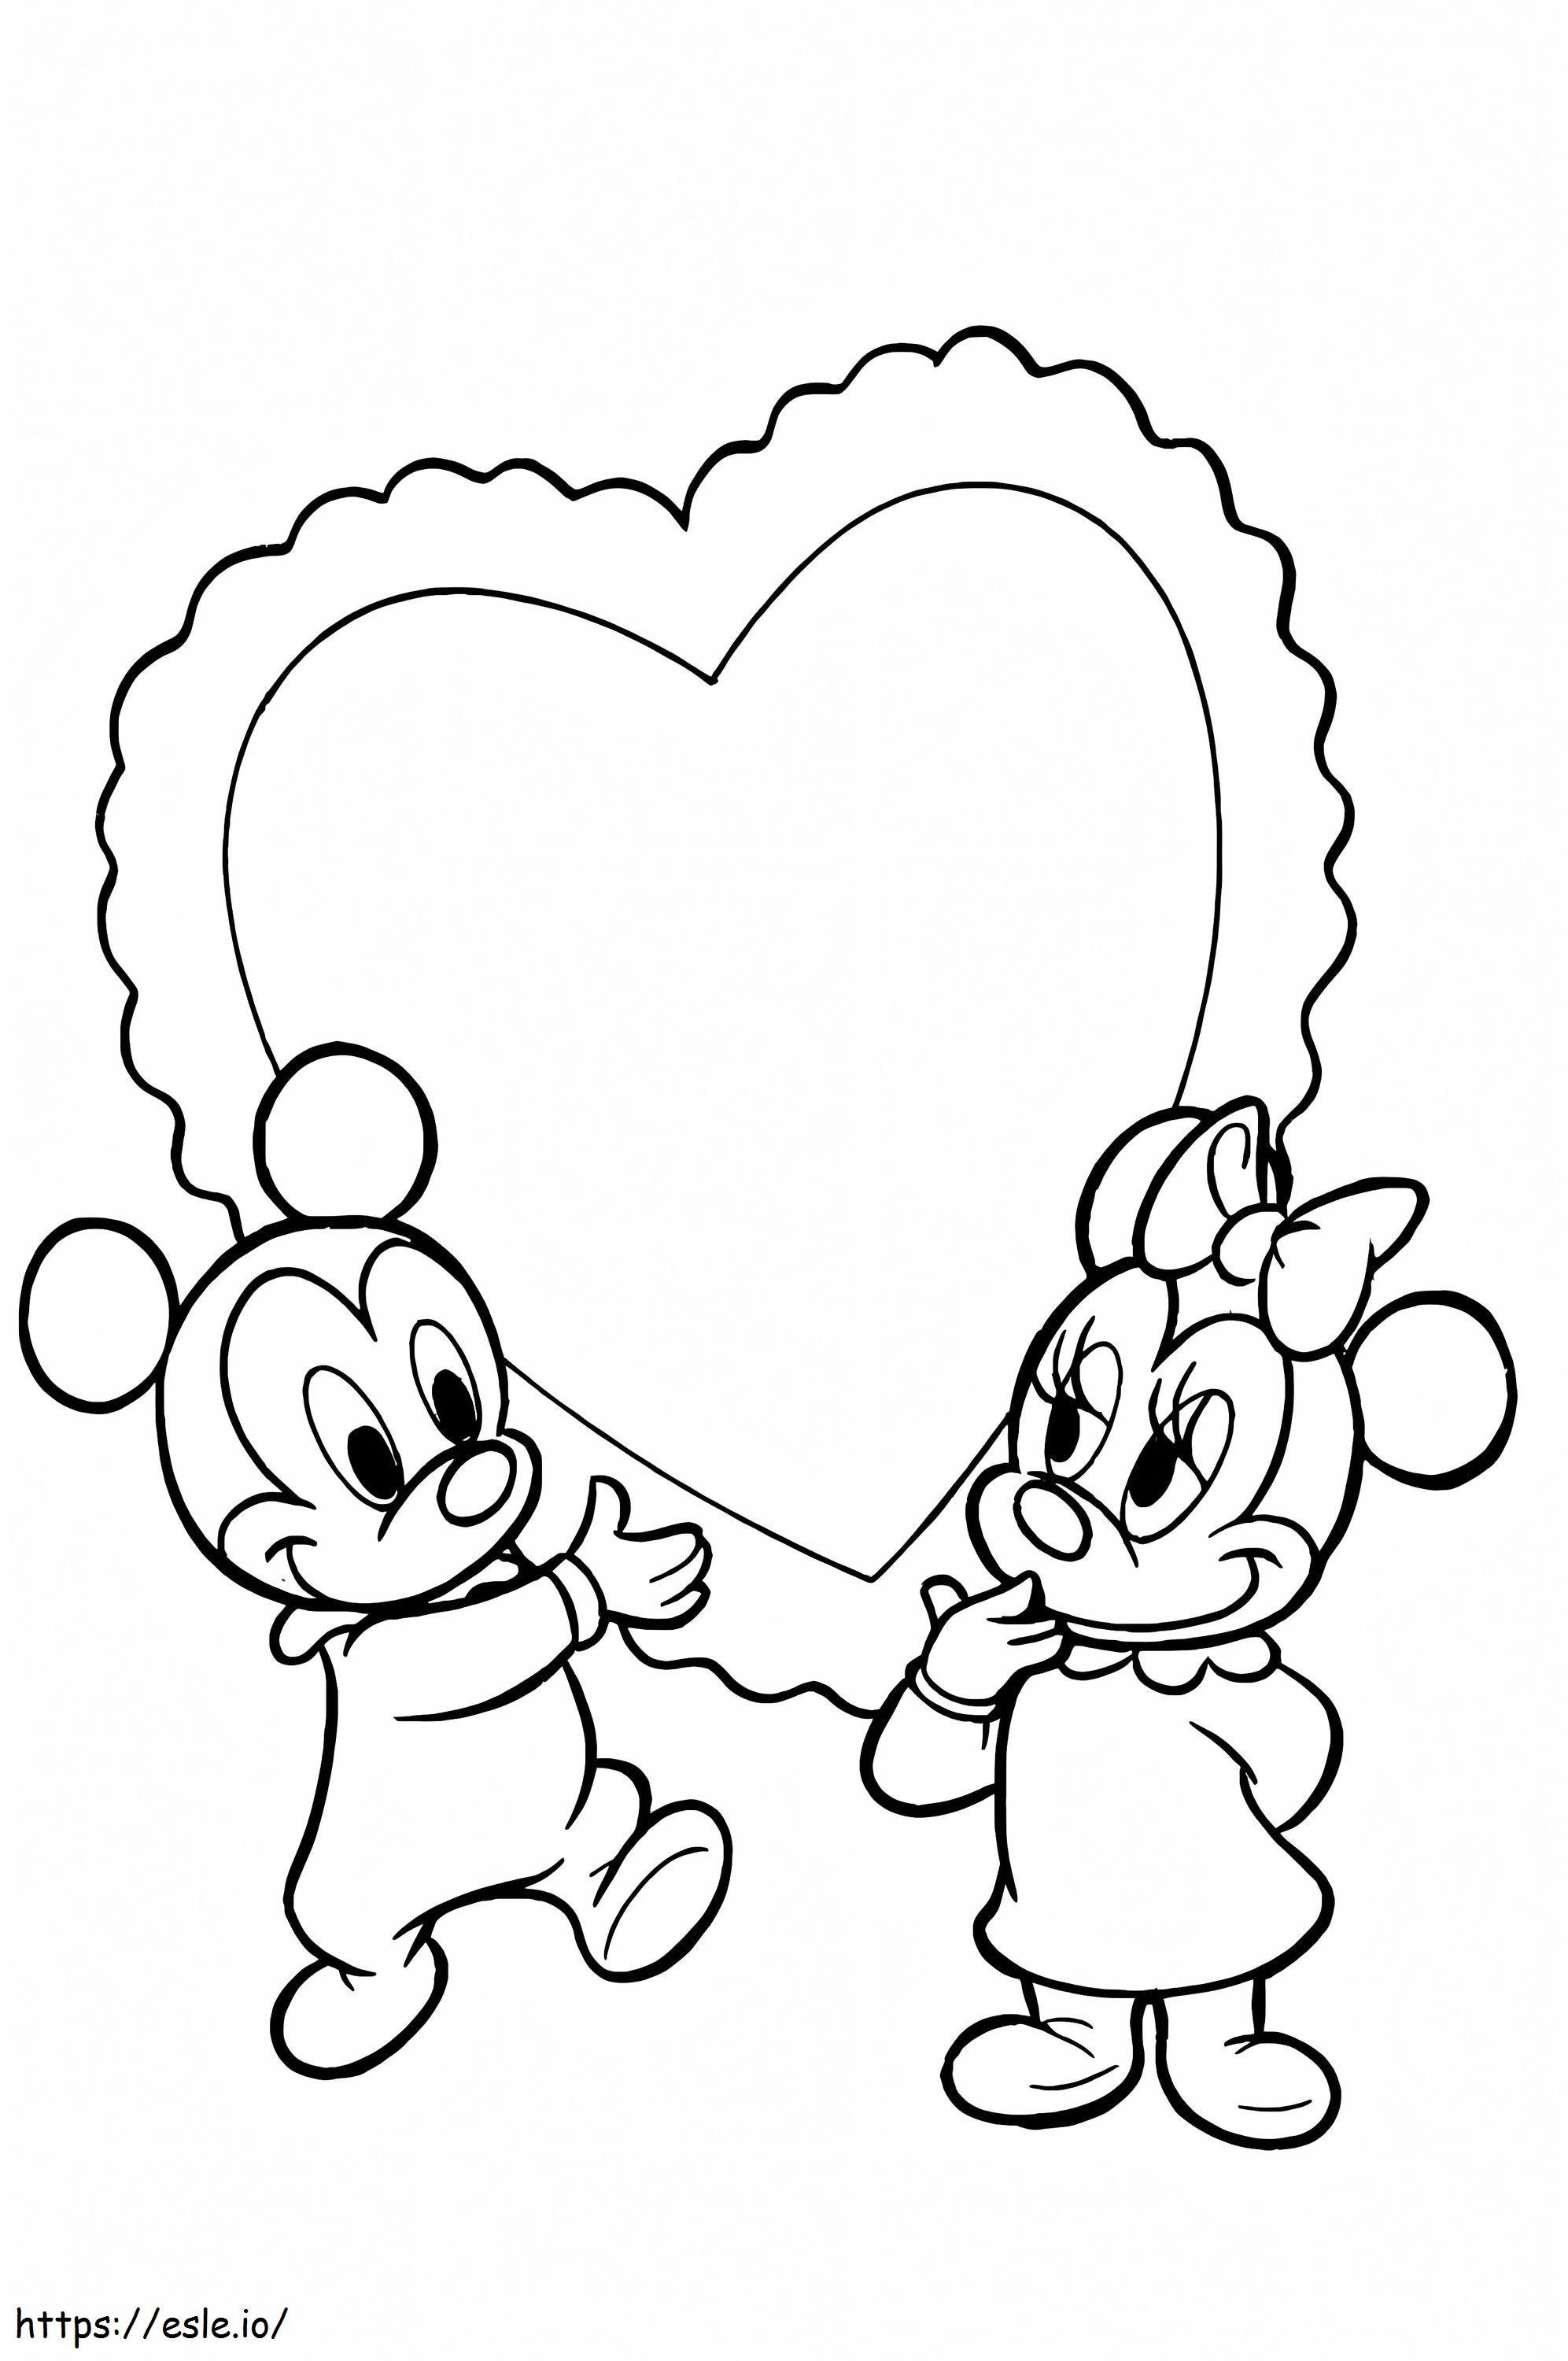 Babys Mickey und Minnie ausmalbilder